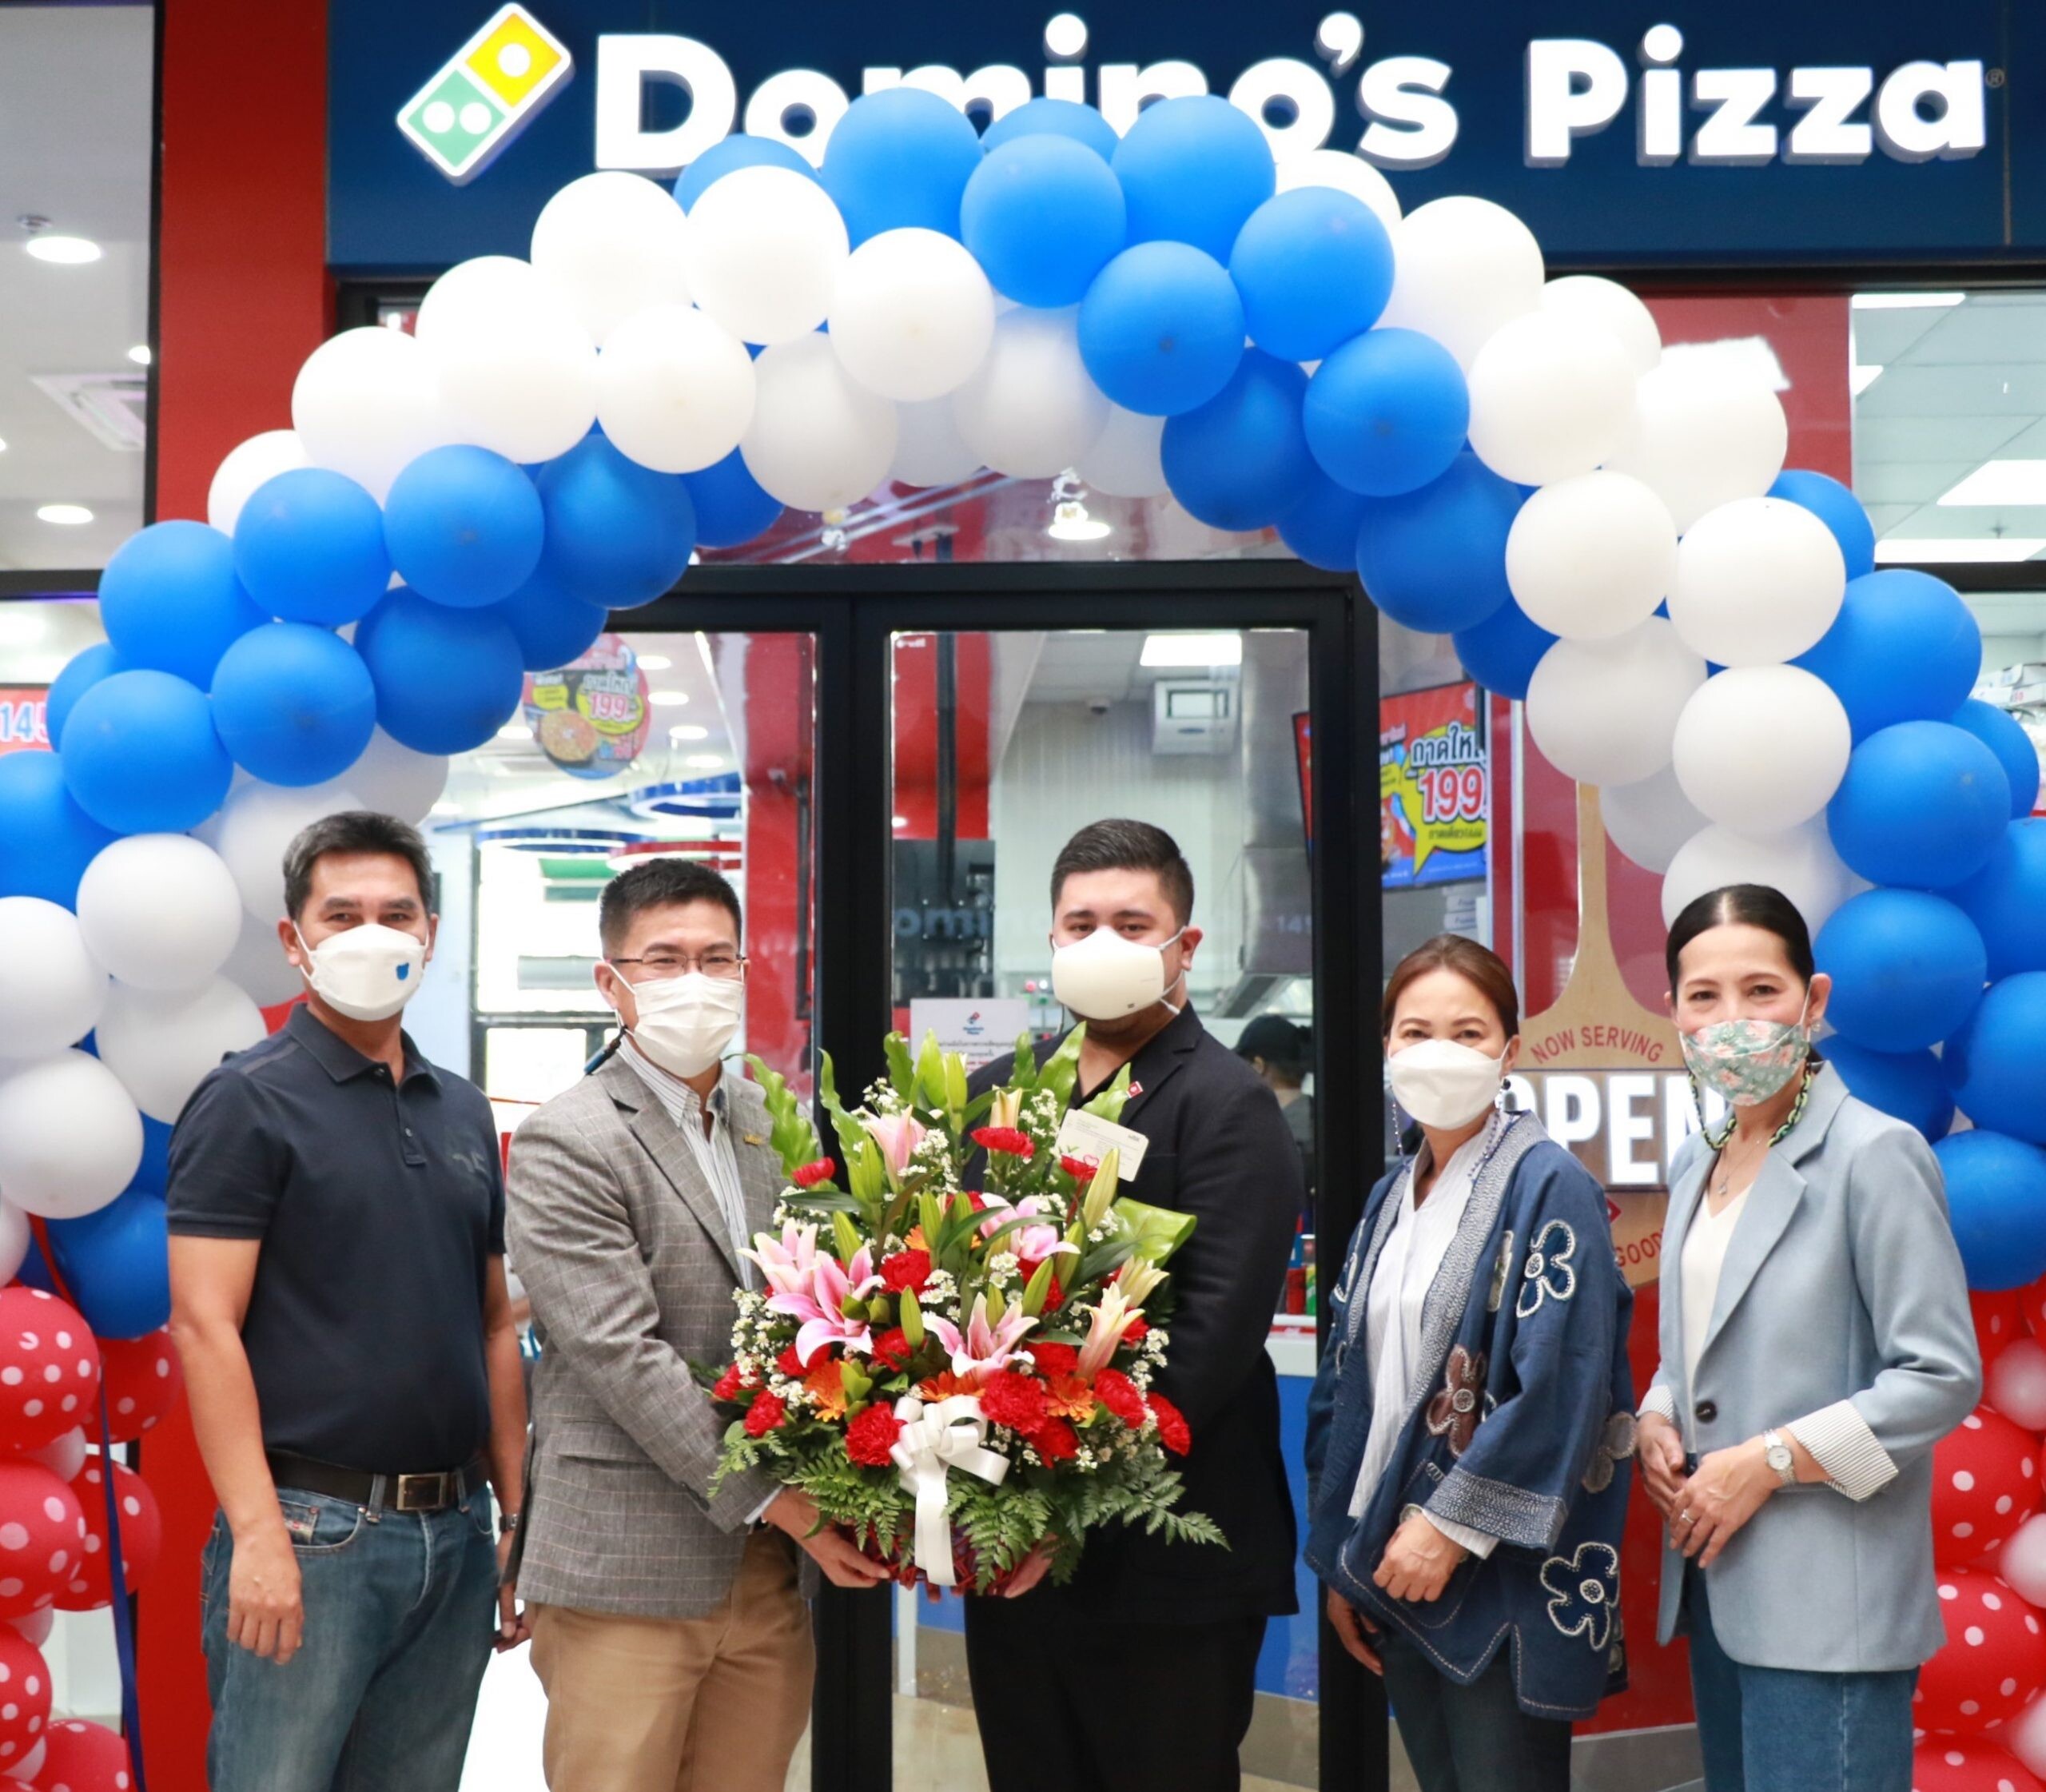 ผู้บริหารเอ็ม บี เค ต้อนรับ Domino's Pizza (โดมิโน่ส์ พิซซ่า) พิซซ่าสัญชาติอเมริกัน เปิดสาขาใหม่ เดอะไนน์ เซ็นเตอร์ ติวานนท์